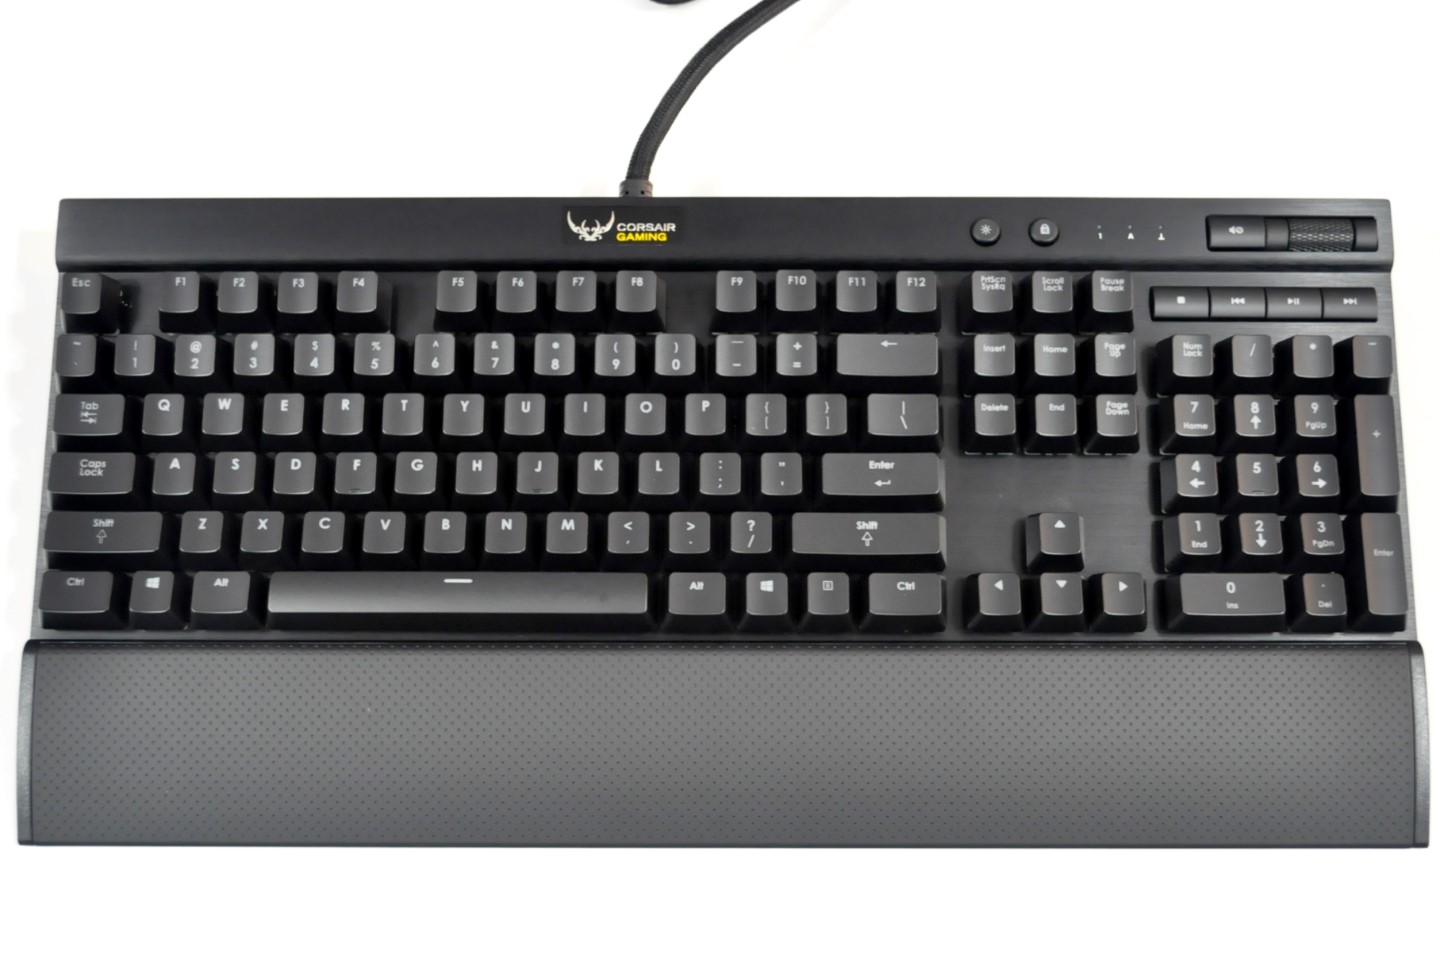 The Corsair Gaming K70 RGB Mechanical Keyboard Gaming K70 RGB Keyboard Review